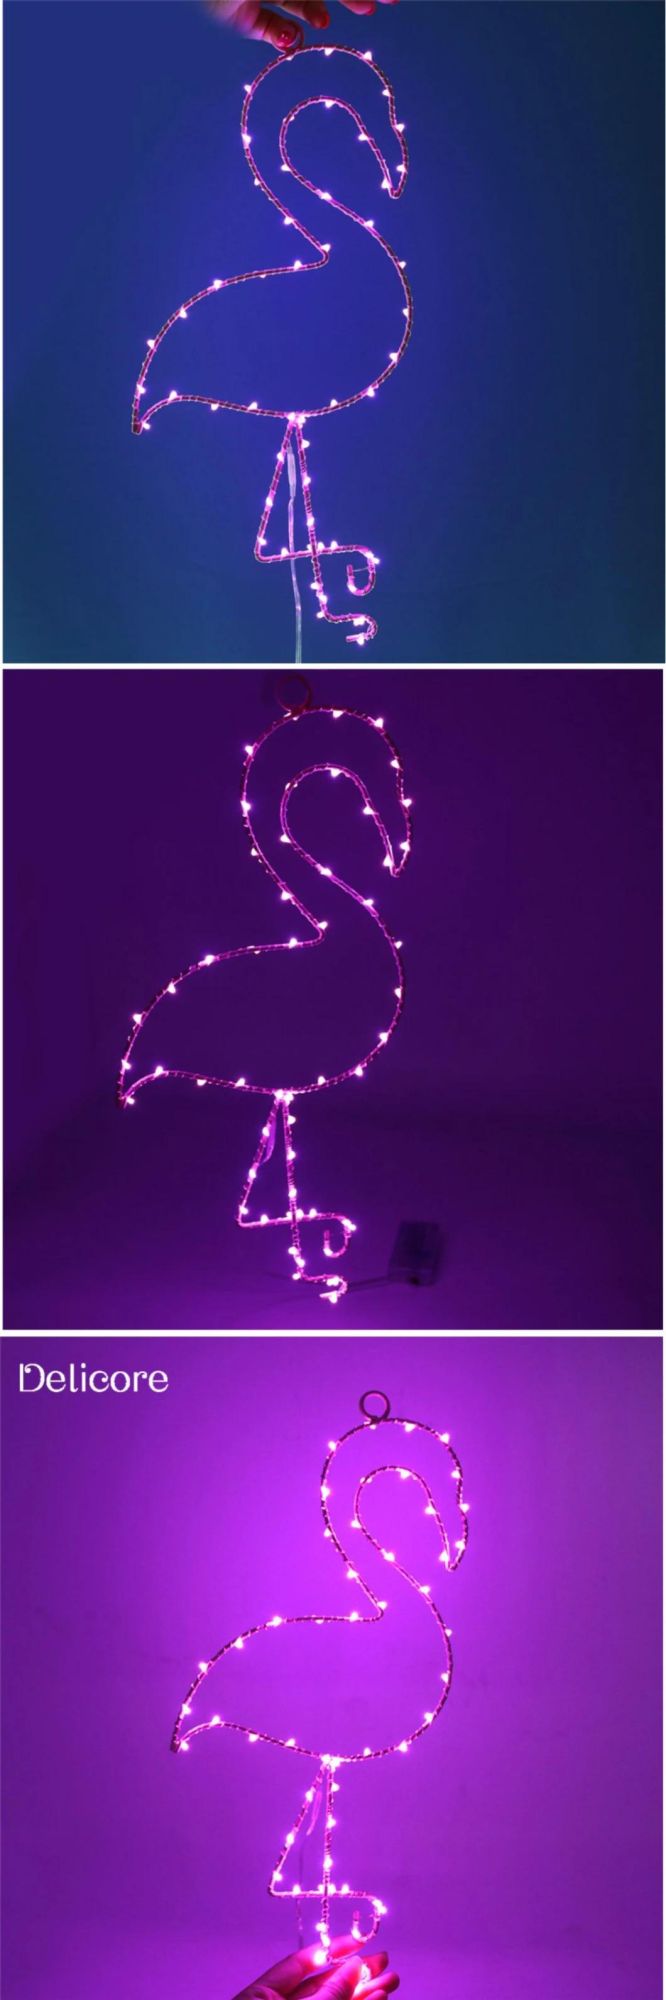 Battery Box Flamingo Model Wall-Mounted Night Light